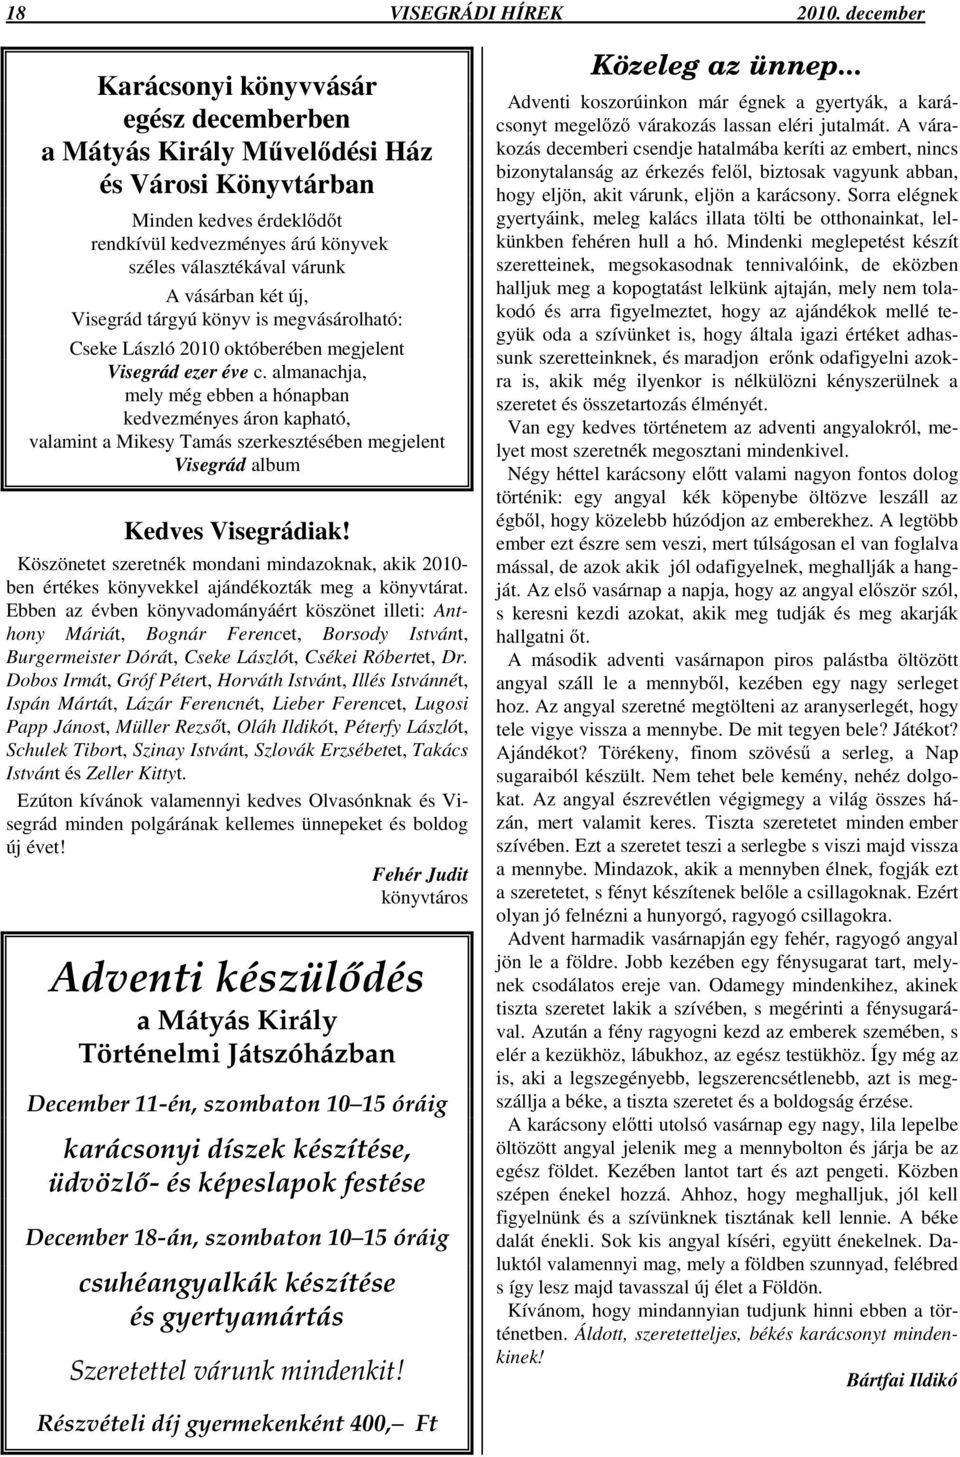 két új, Visegrád tárgyú könyv is megvásárolható: Cseke László 2010 októberében megjelent Visegrád ezer éve c.